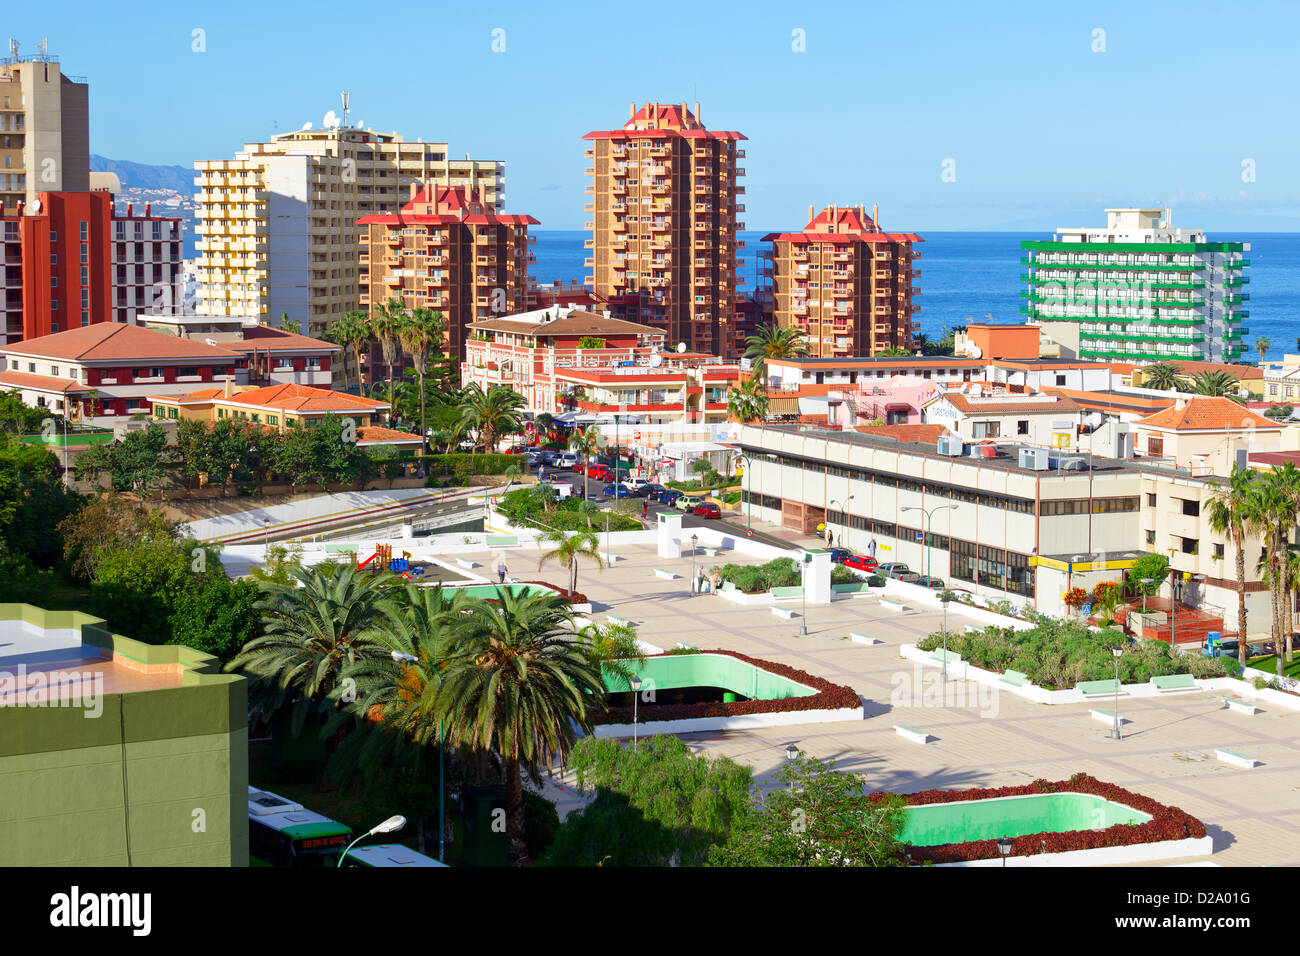 Vue de la ville de Puerto de la Cruz, Tenerife, Espagne / Dezember 2012 Banque D'Images